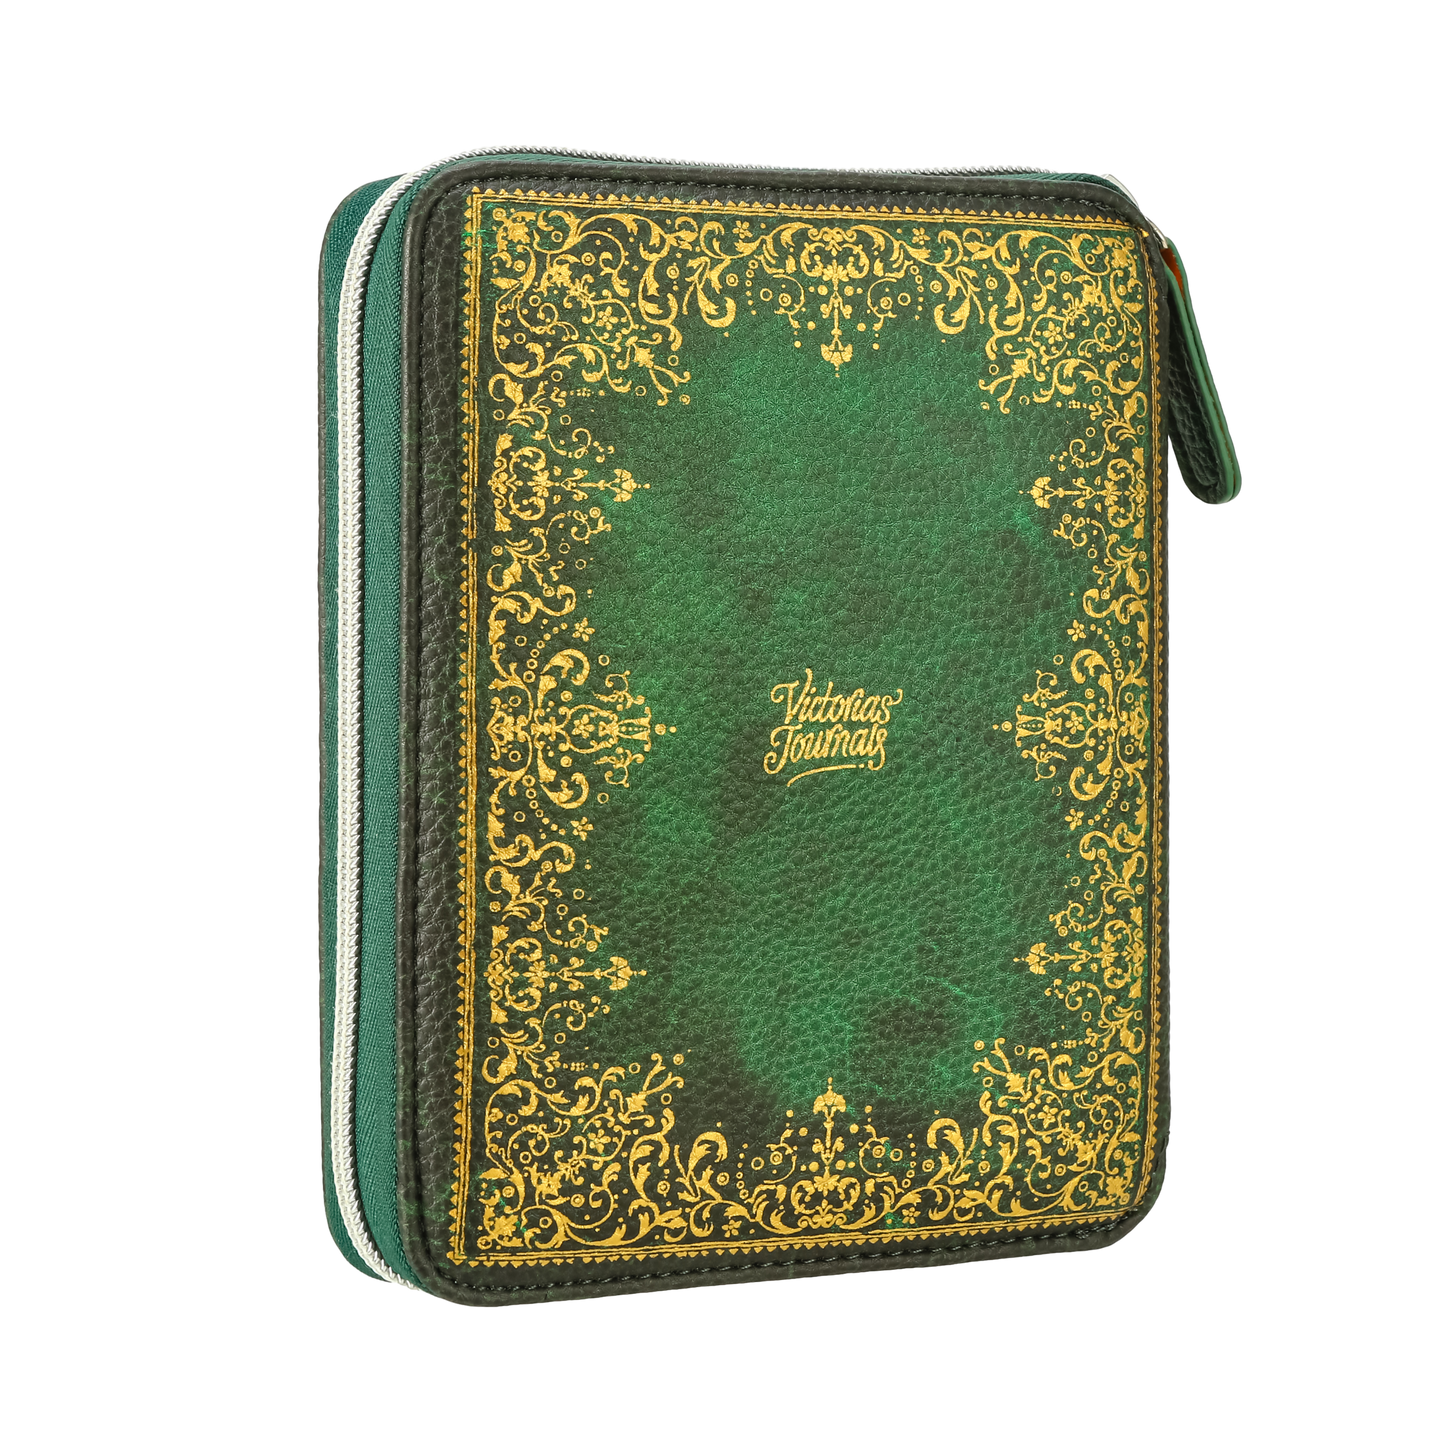 Zippered Vegan Leather Portfolio Diary (Vintage Green)